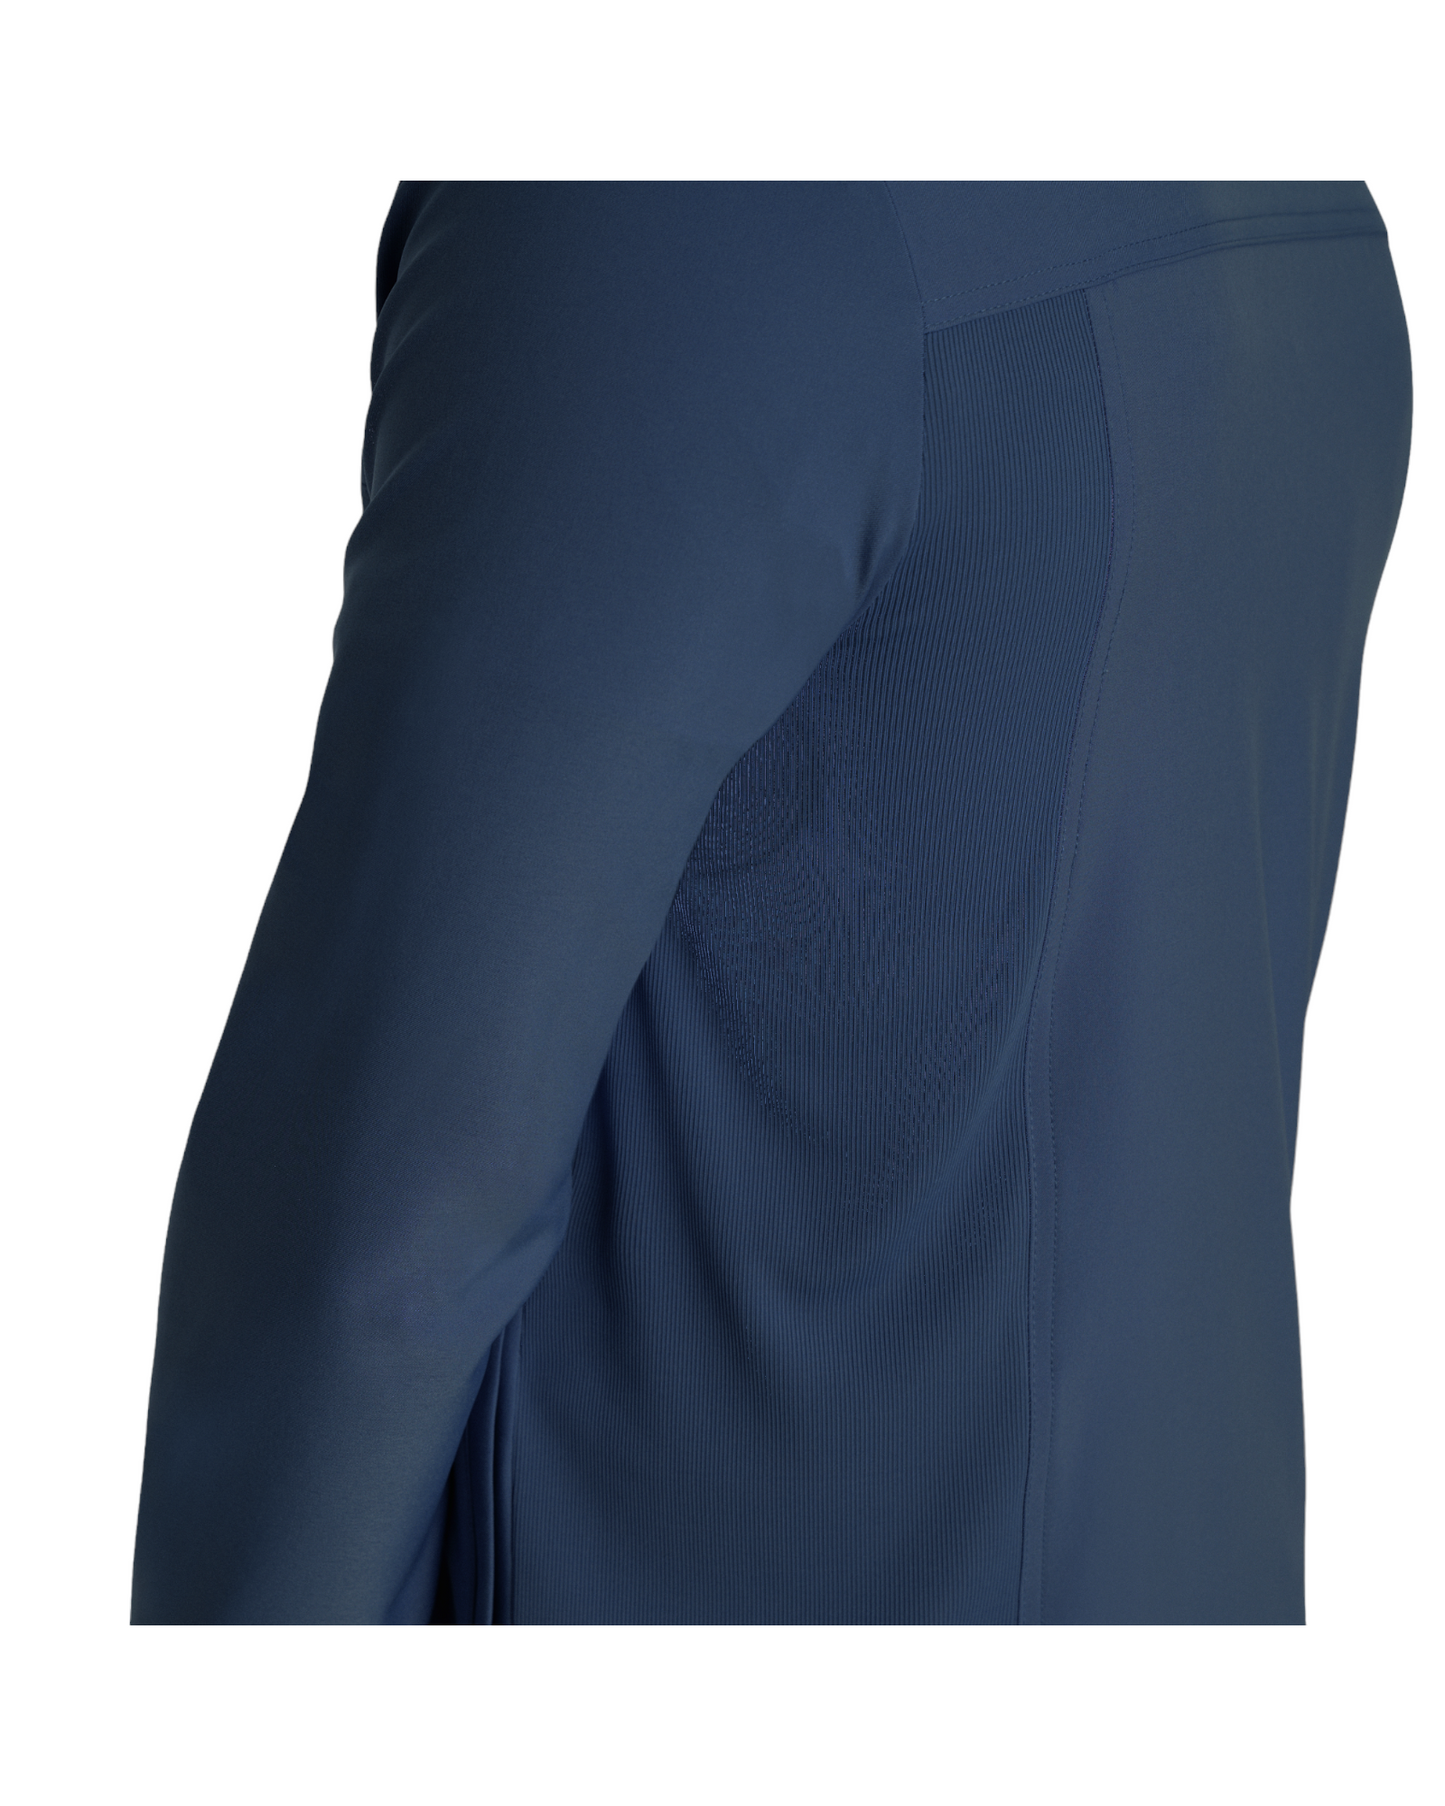 Vue latérale de la veste de survêtement pour hommes à fermeture éclair Landau Forward #LJ703 couleur Marine